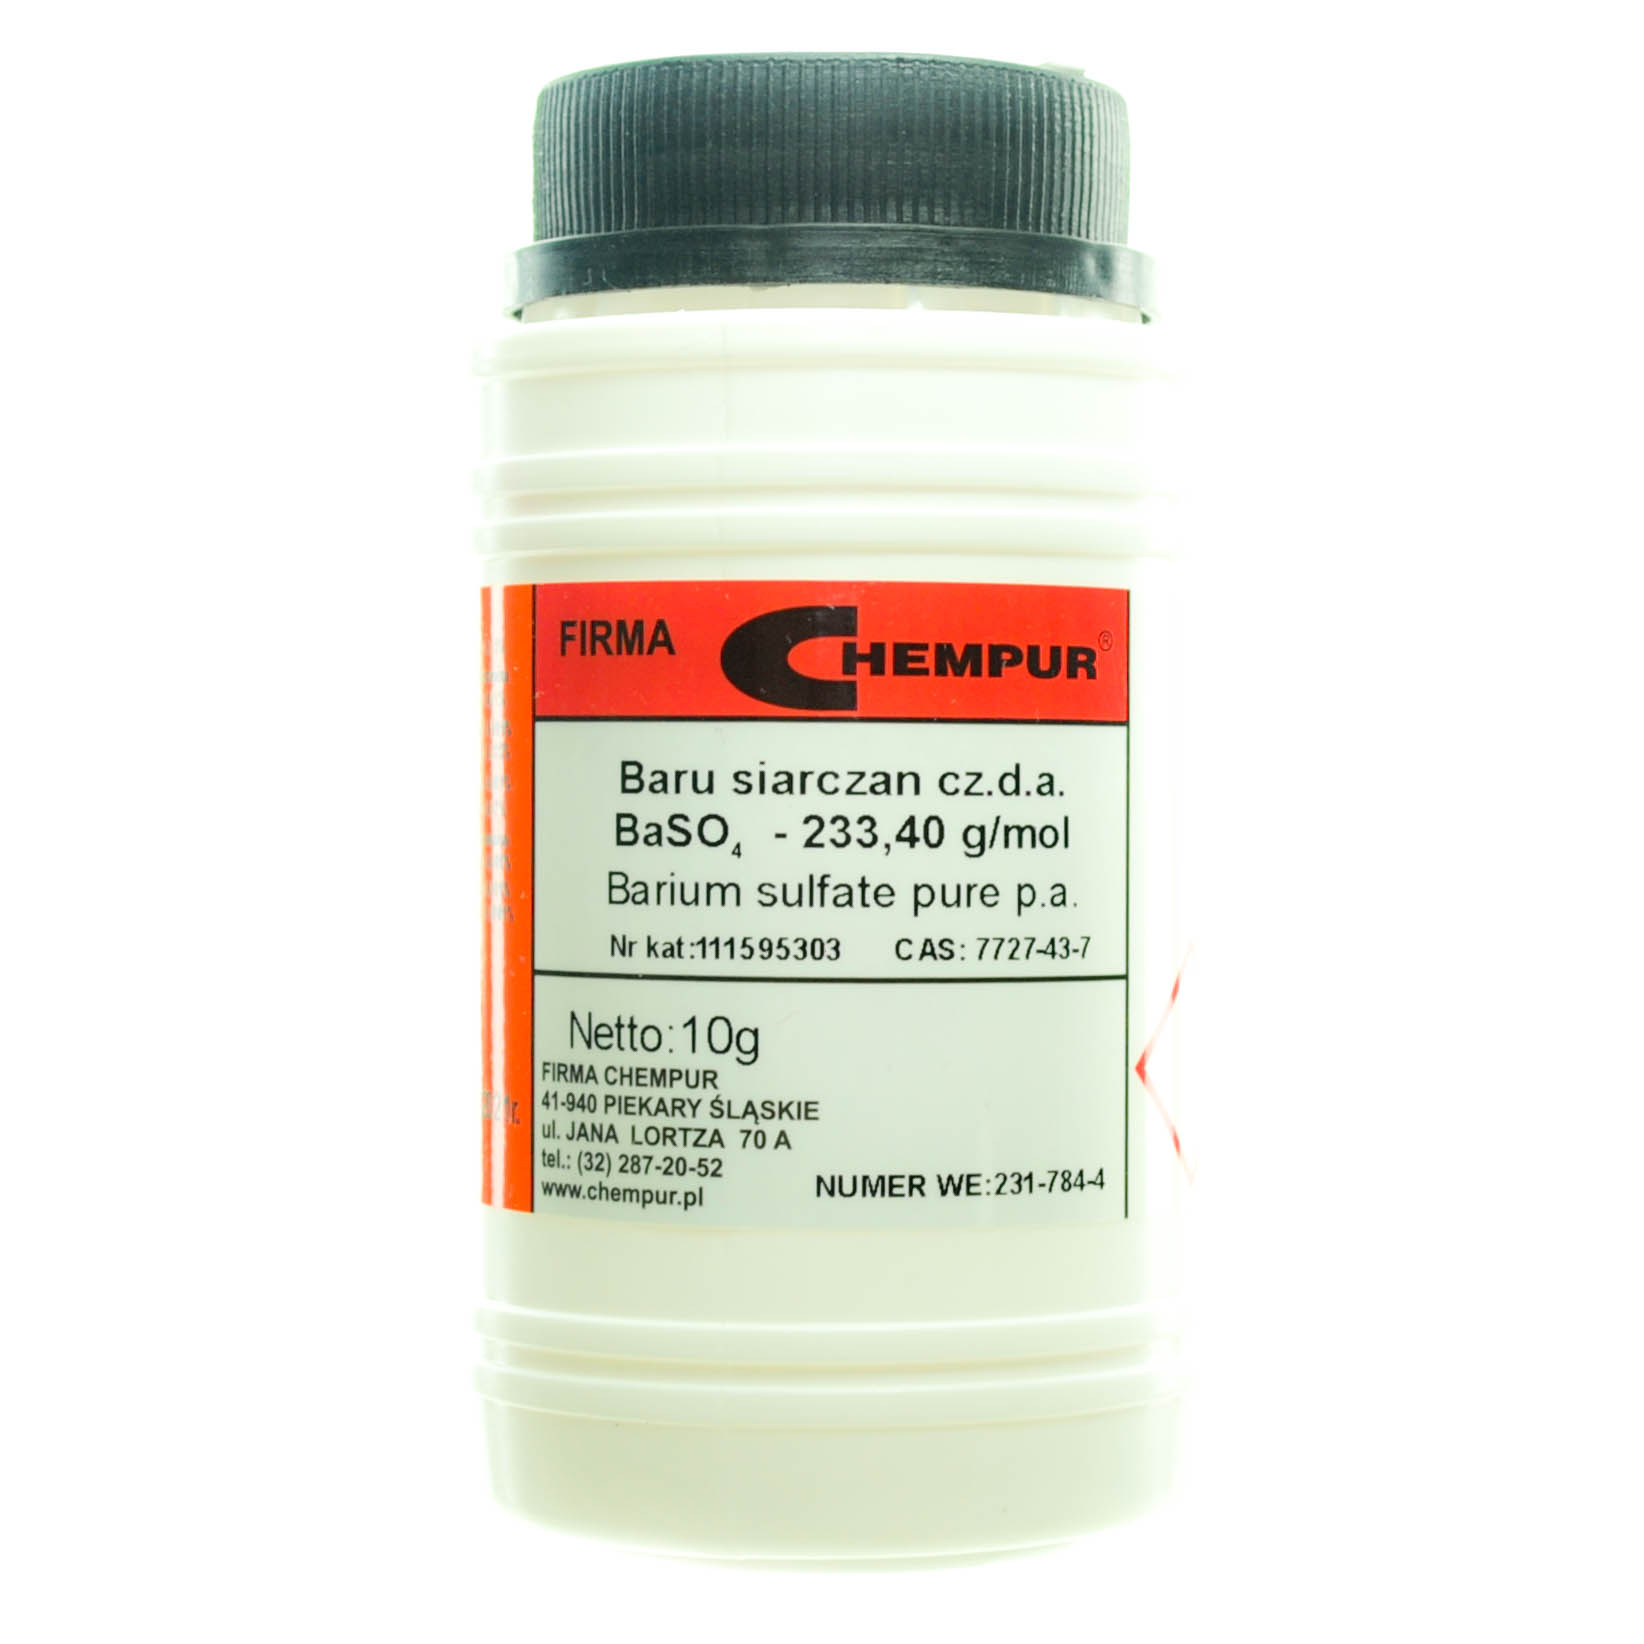 Barium sulfate pure p.a.